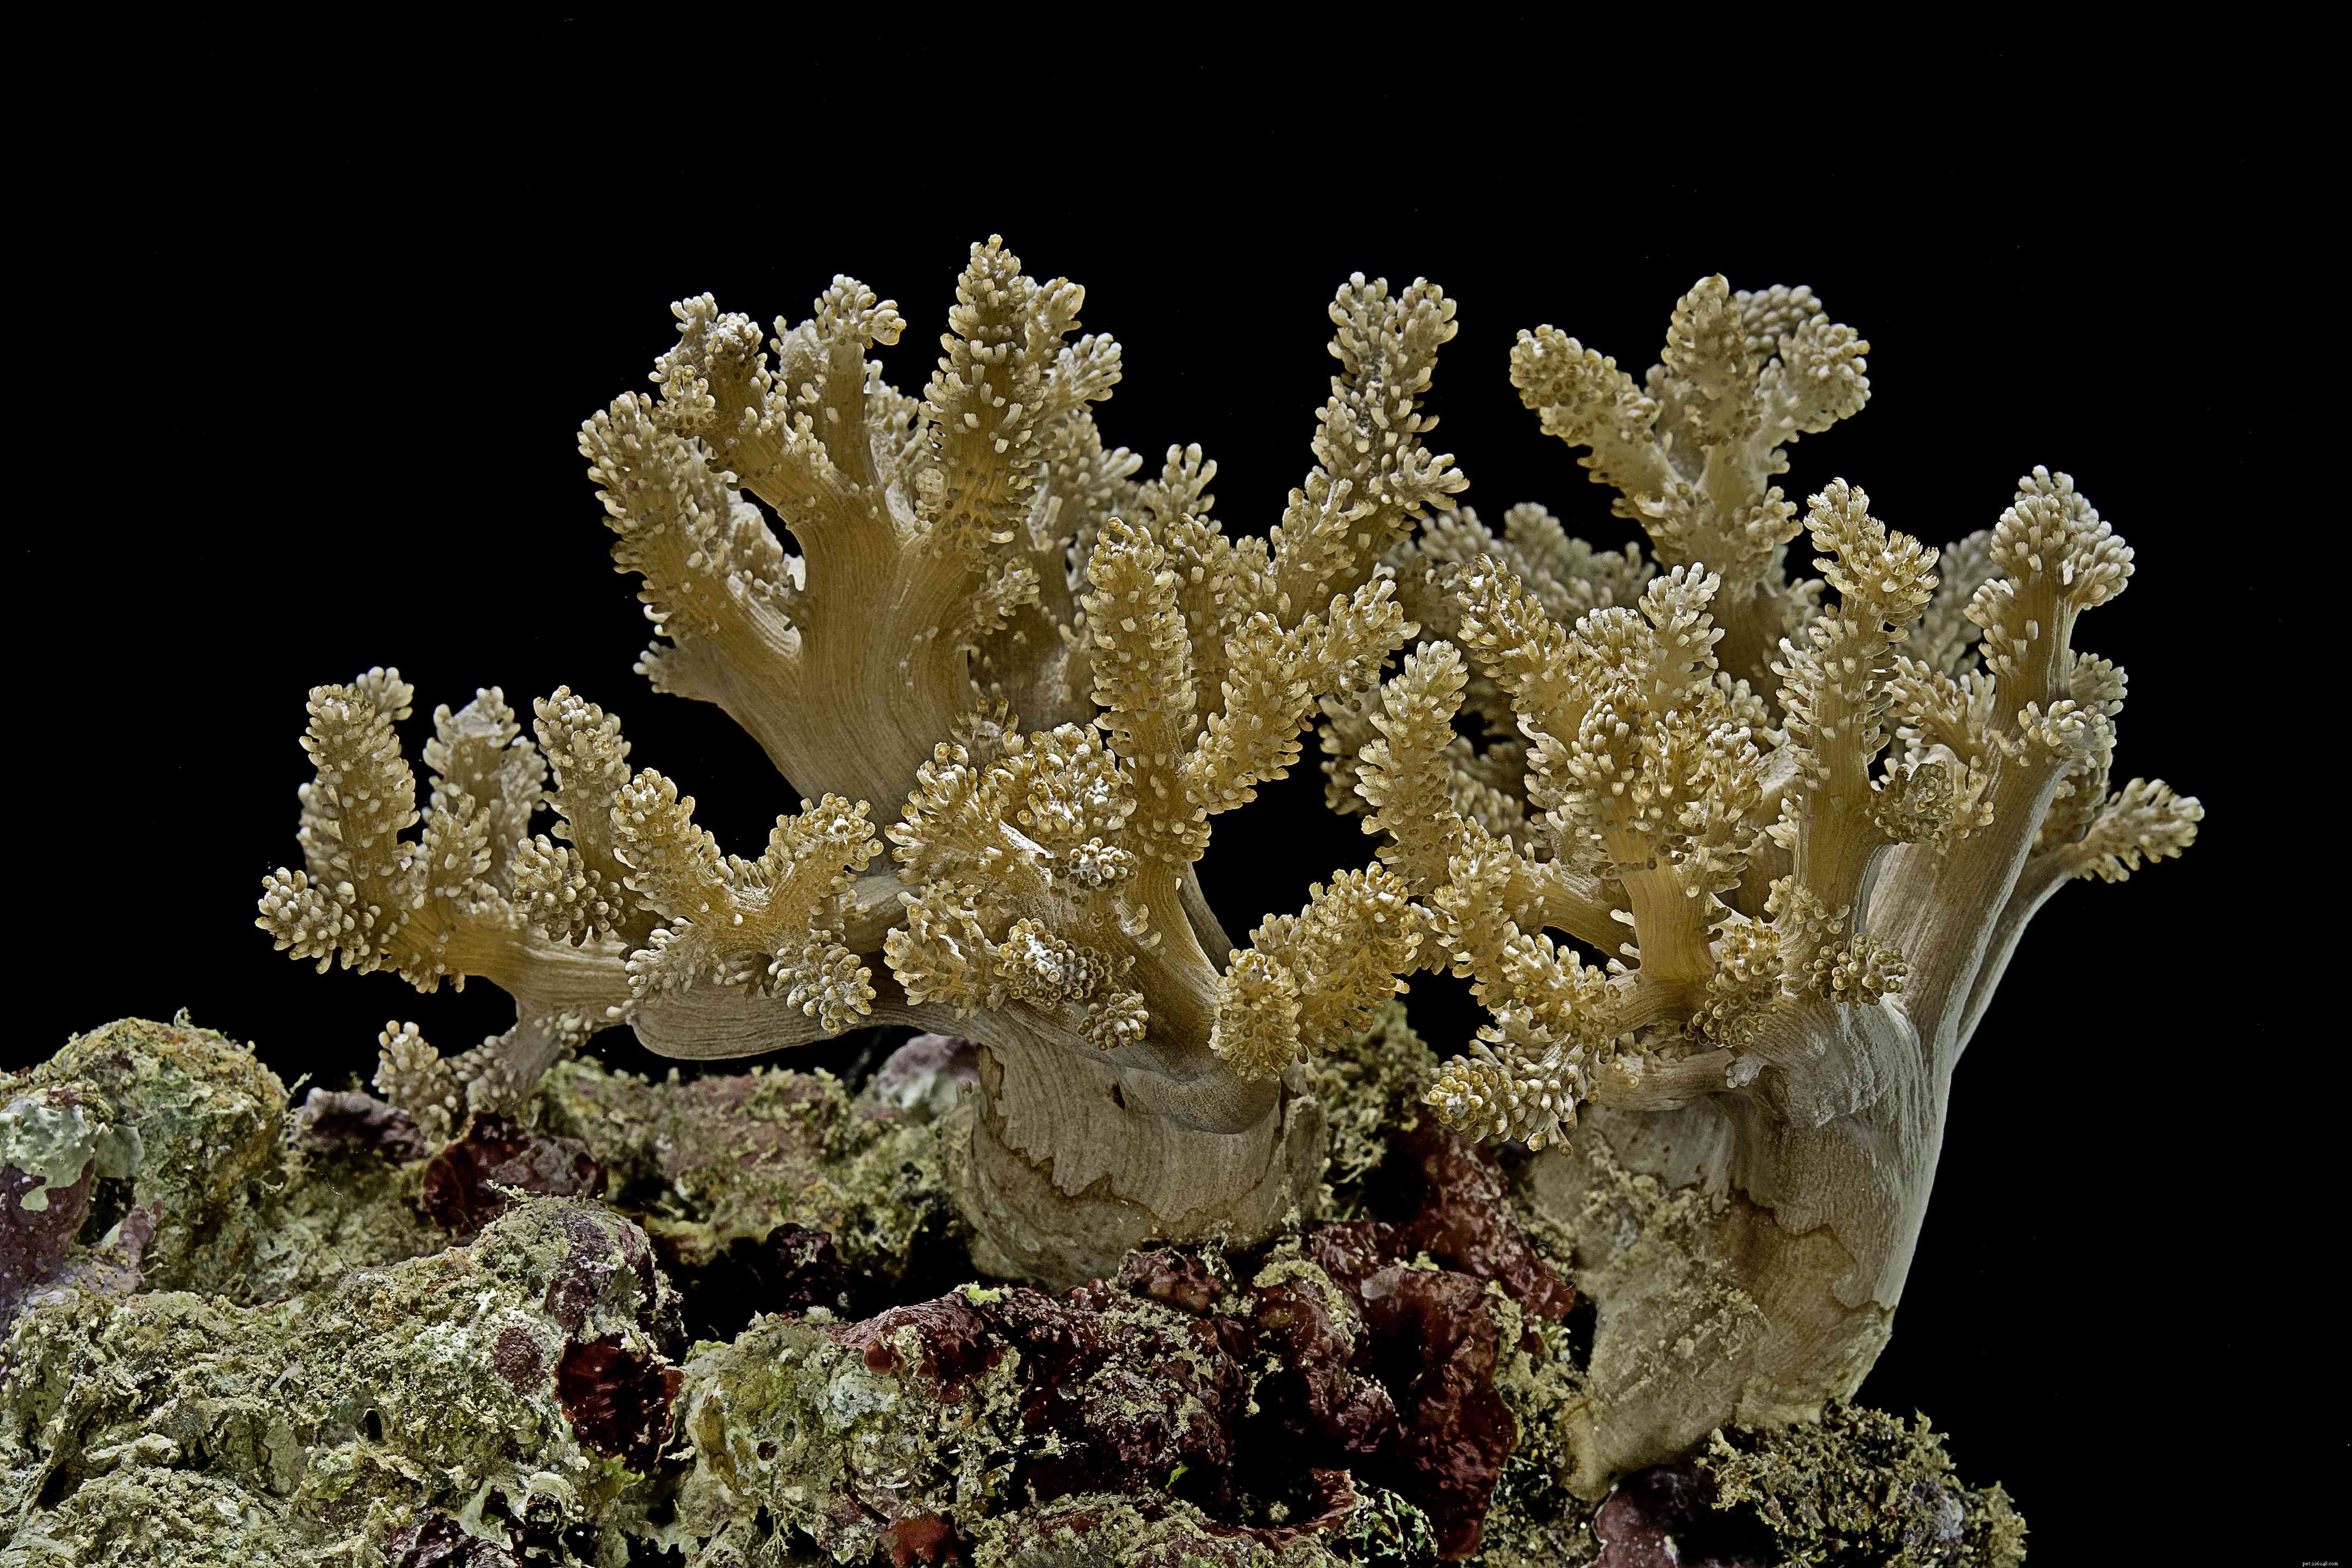 Corais moles fáceis para aquários de recife